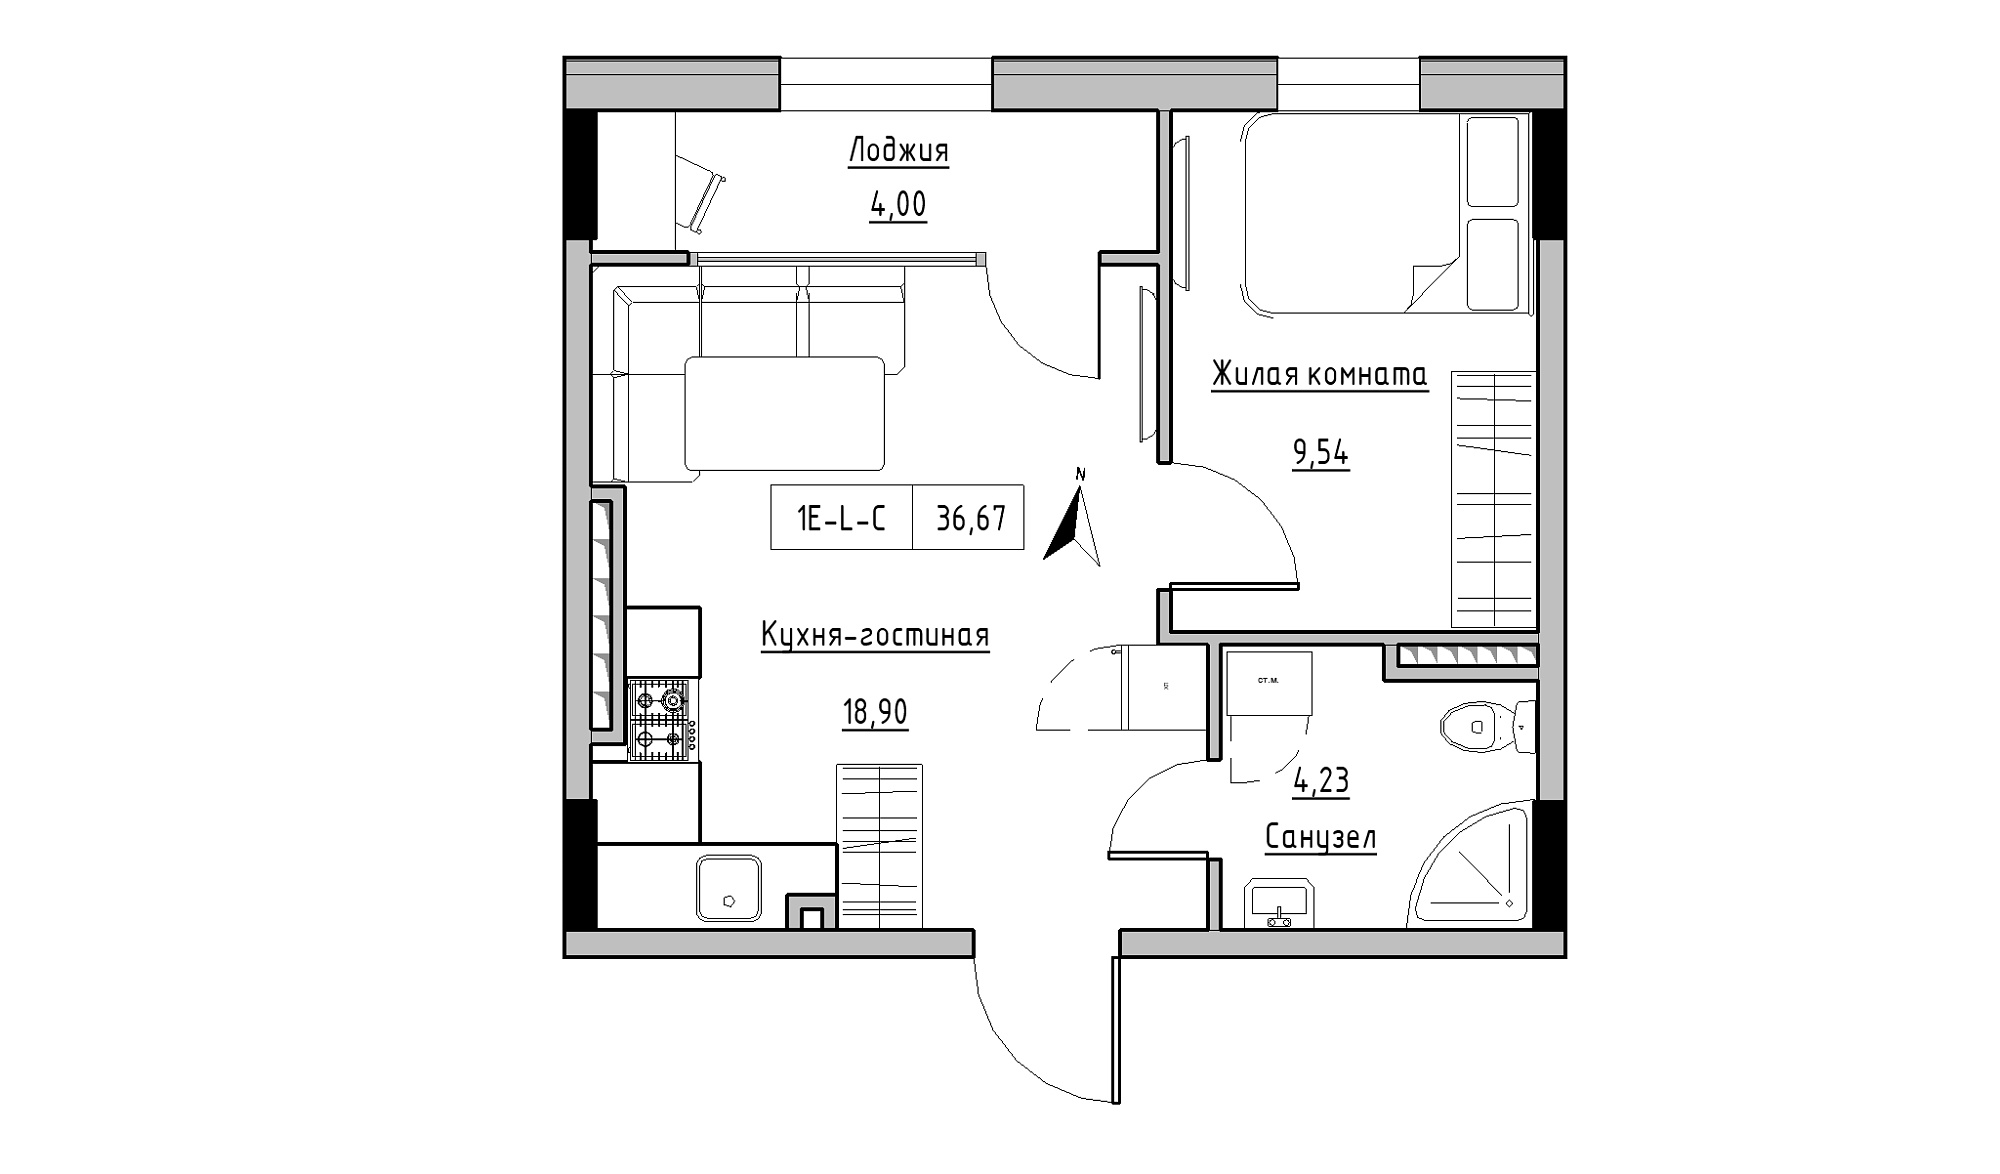 Планування 1-к квартира площею 36.67м2, KS-025-05/0008.